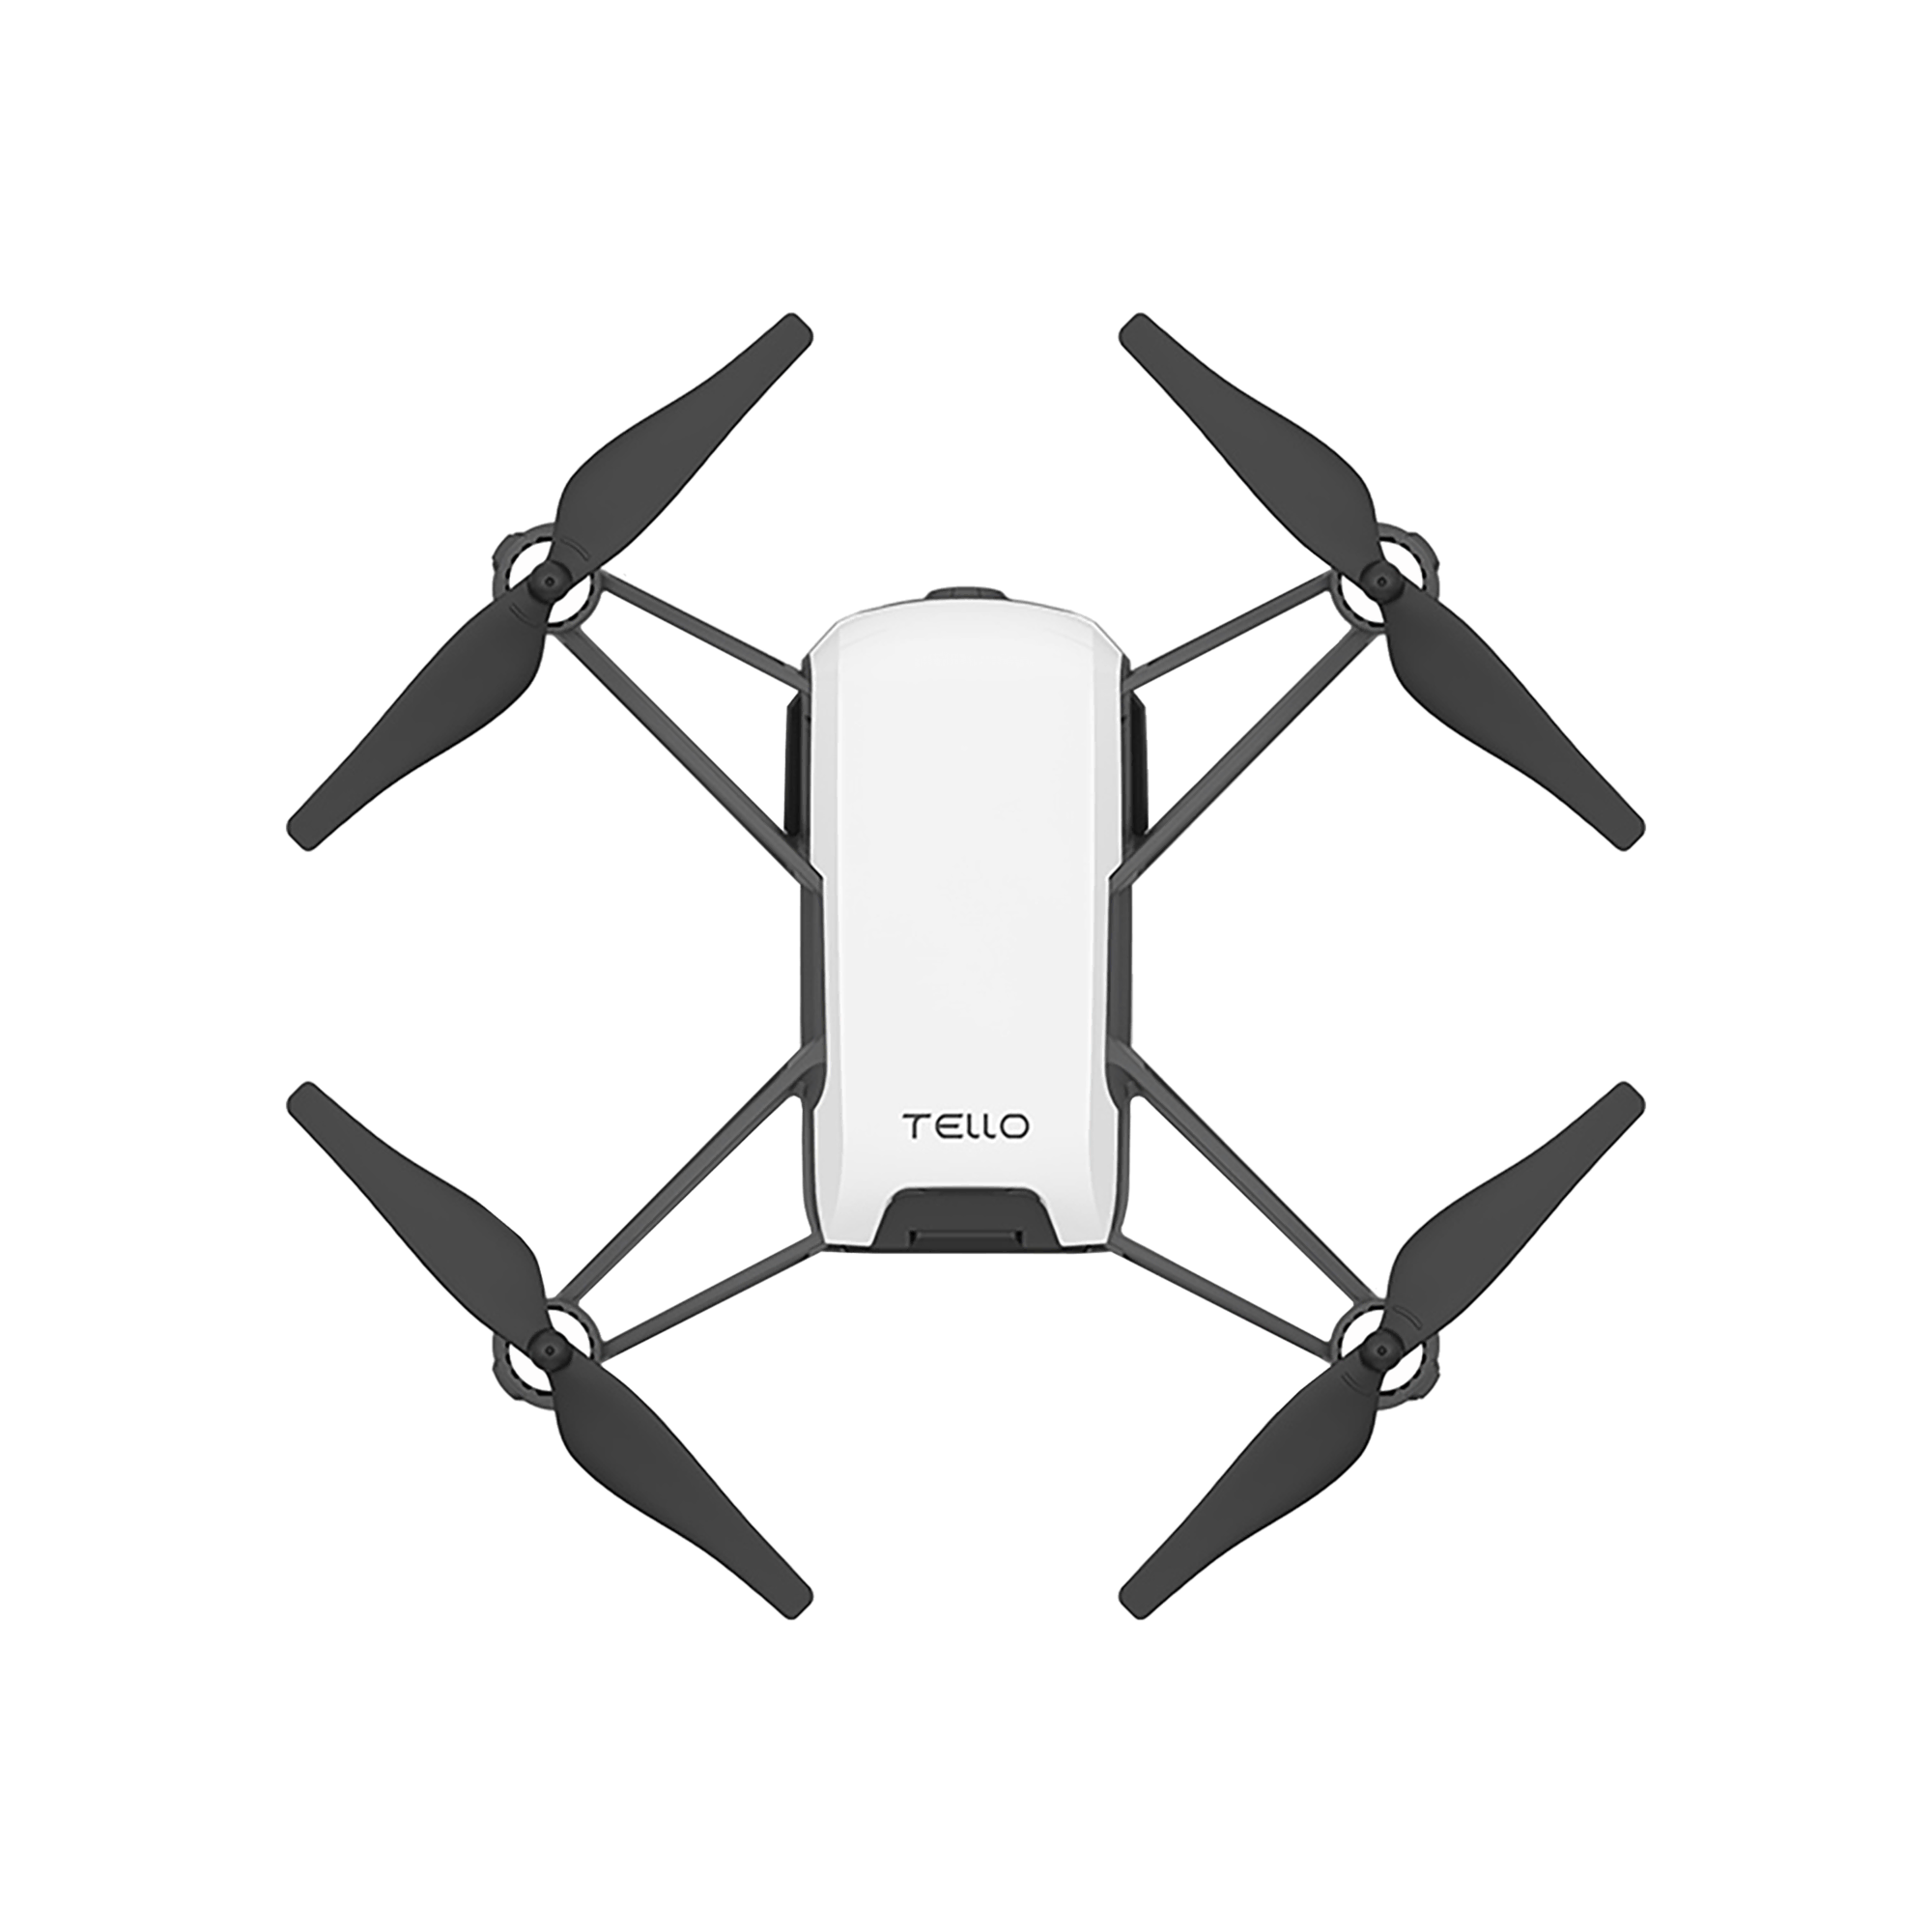 DJI Tello Drone Drone